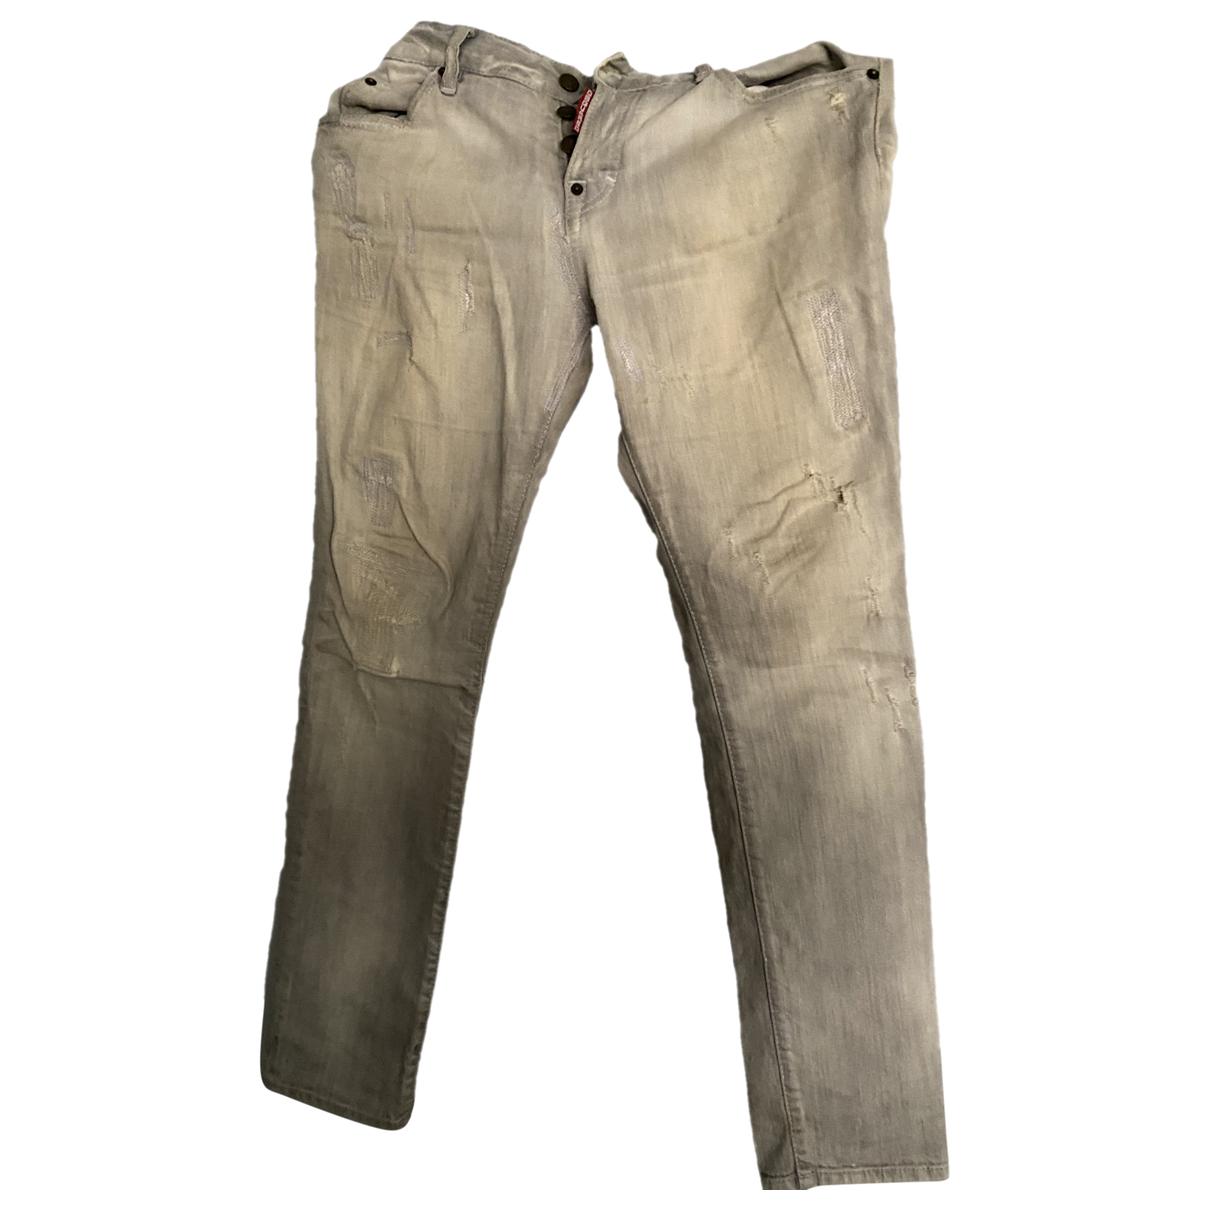 Slim jeans Dsquared2 Grey size 29 US in Denim - Jeans - 36376306